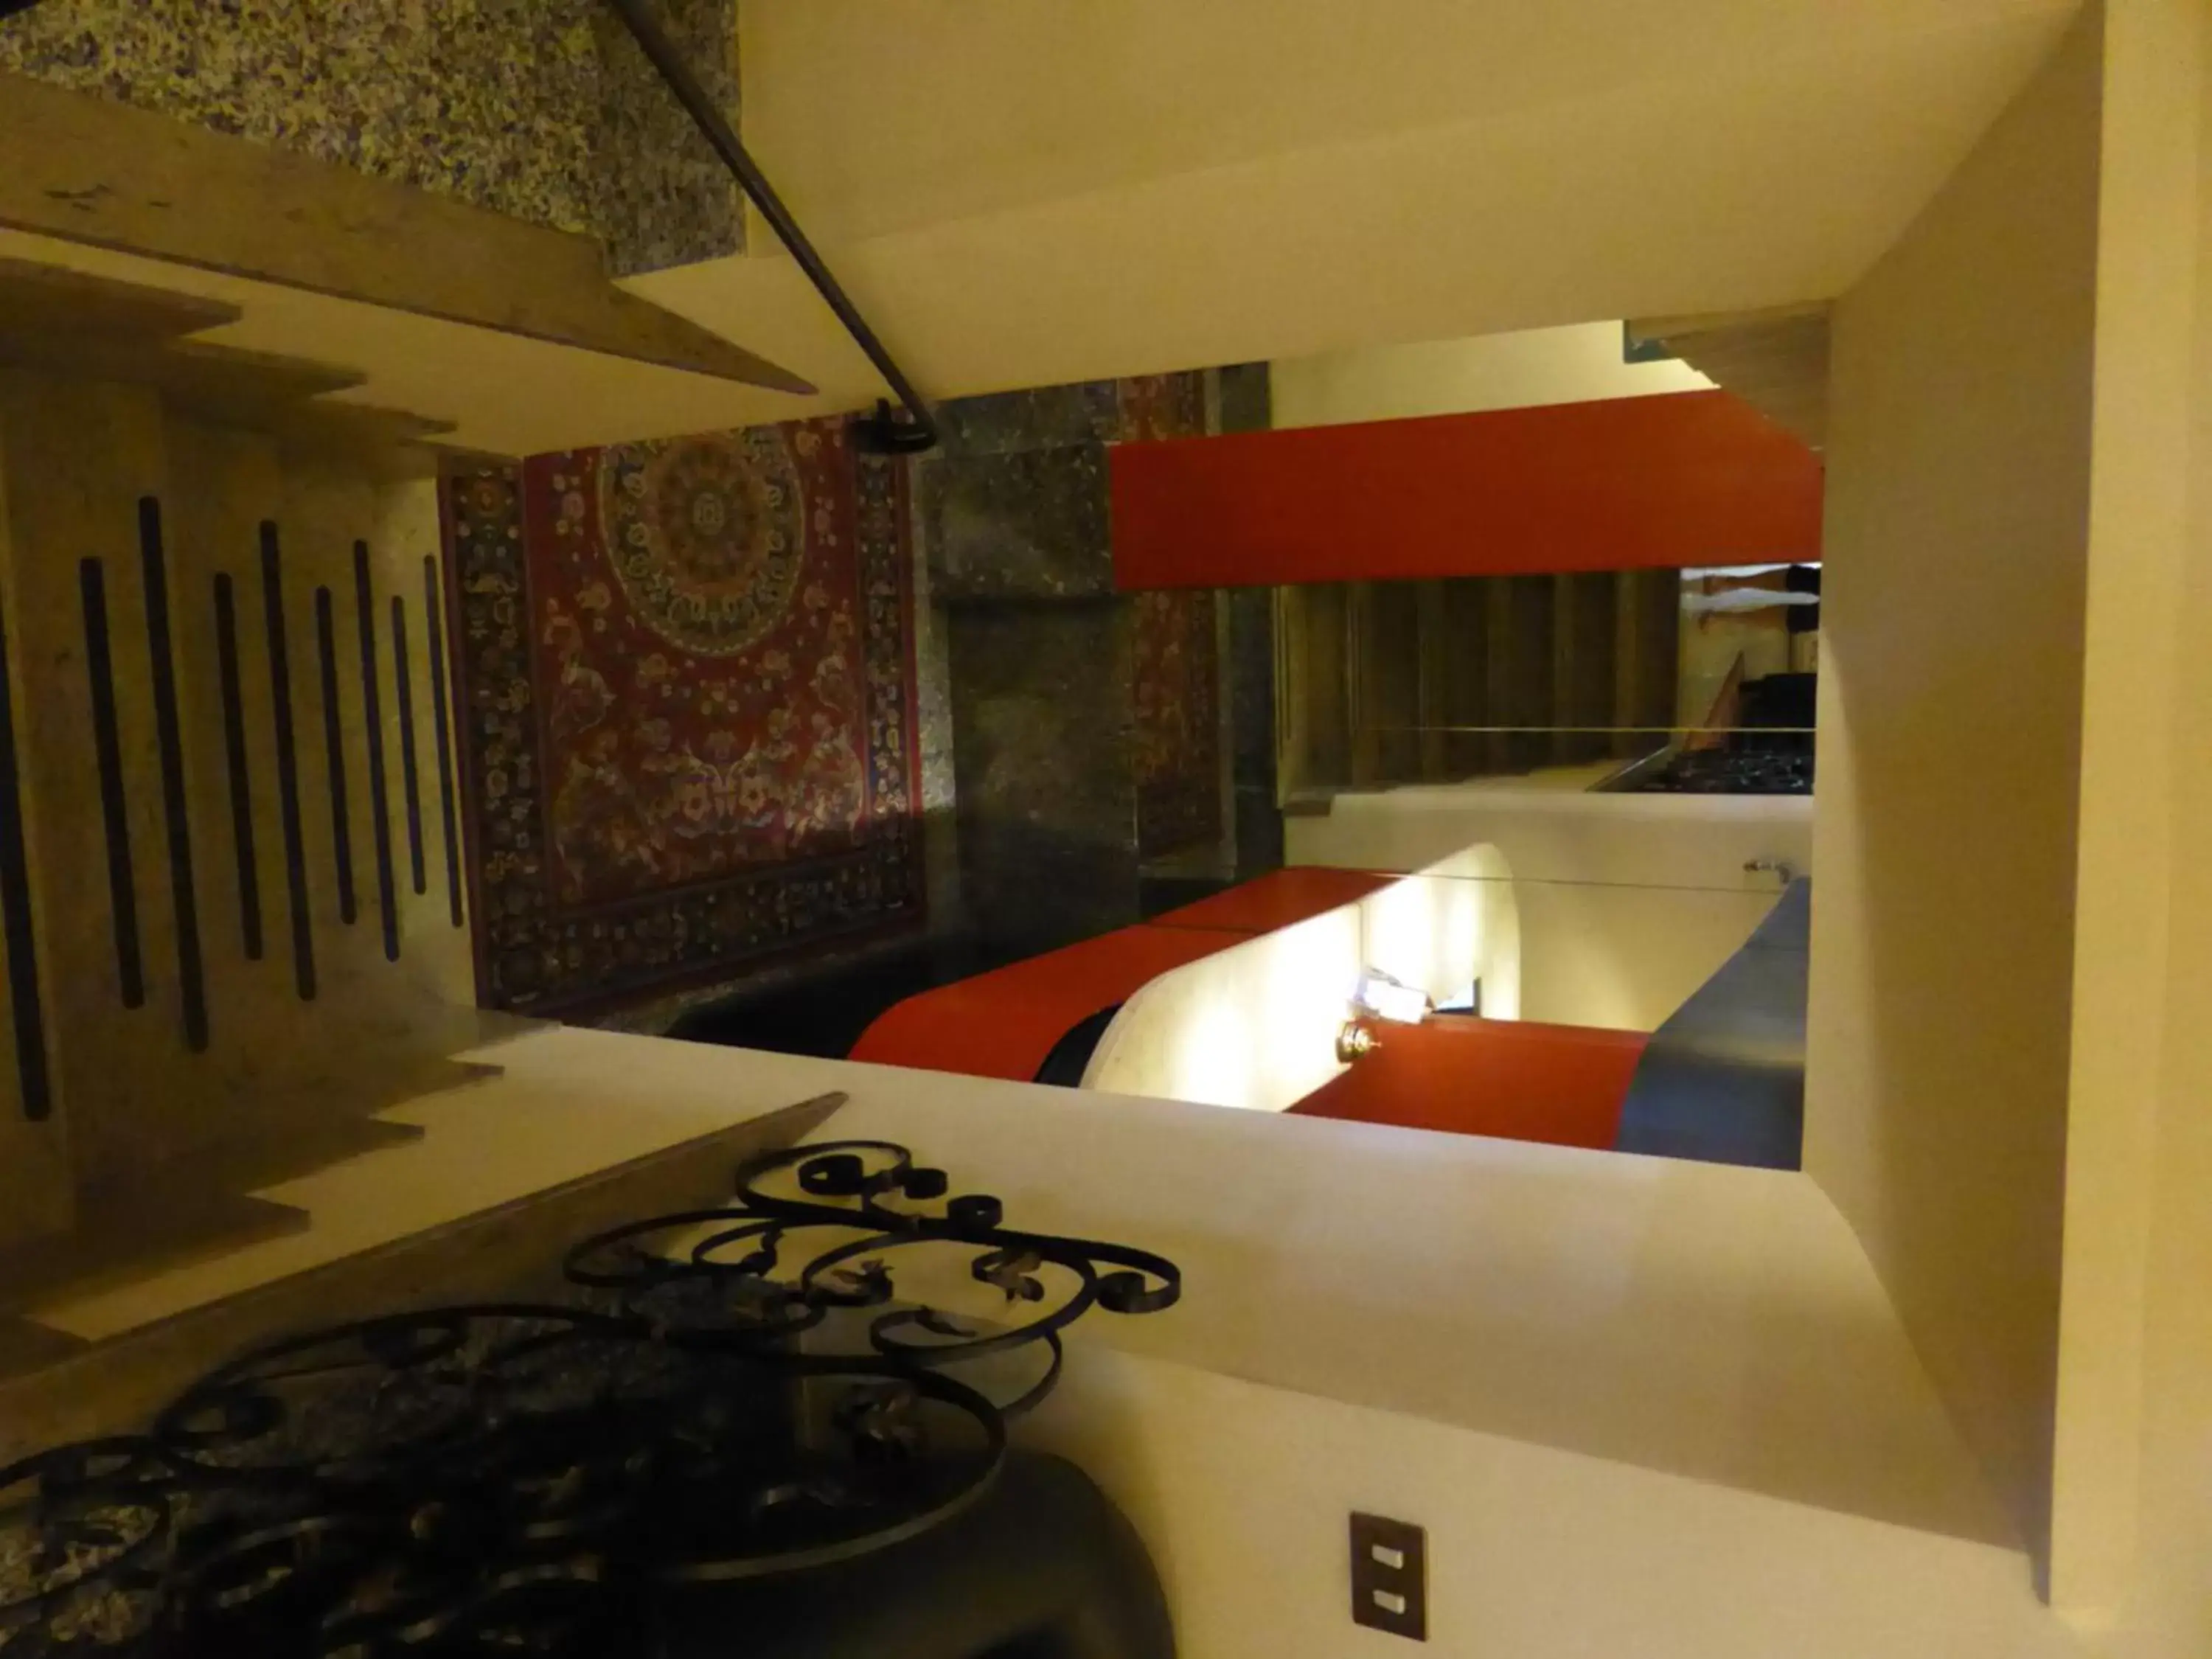 Lobby or reception in Hotel Prati